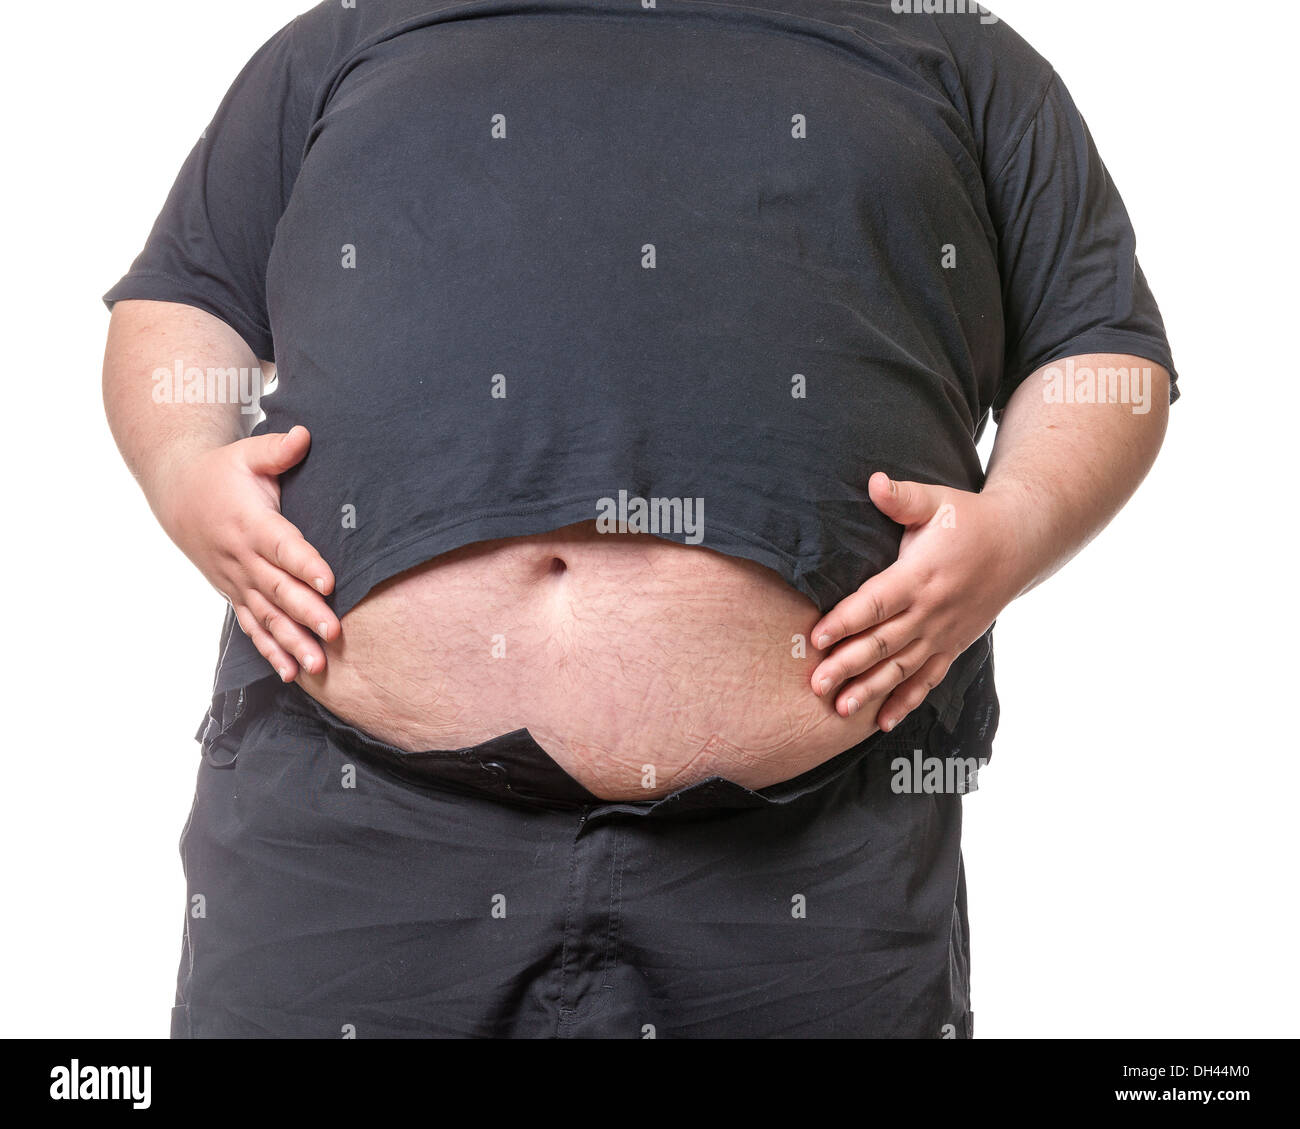 Dicker Mann mit einem dicken Bauch Stockfotografie - Alamy